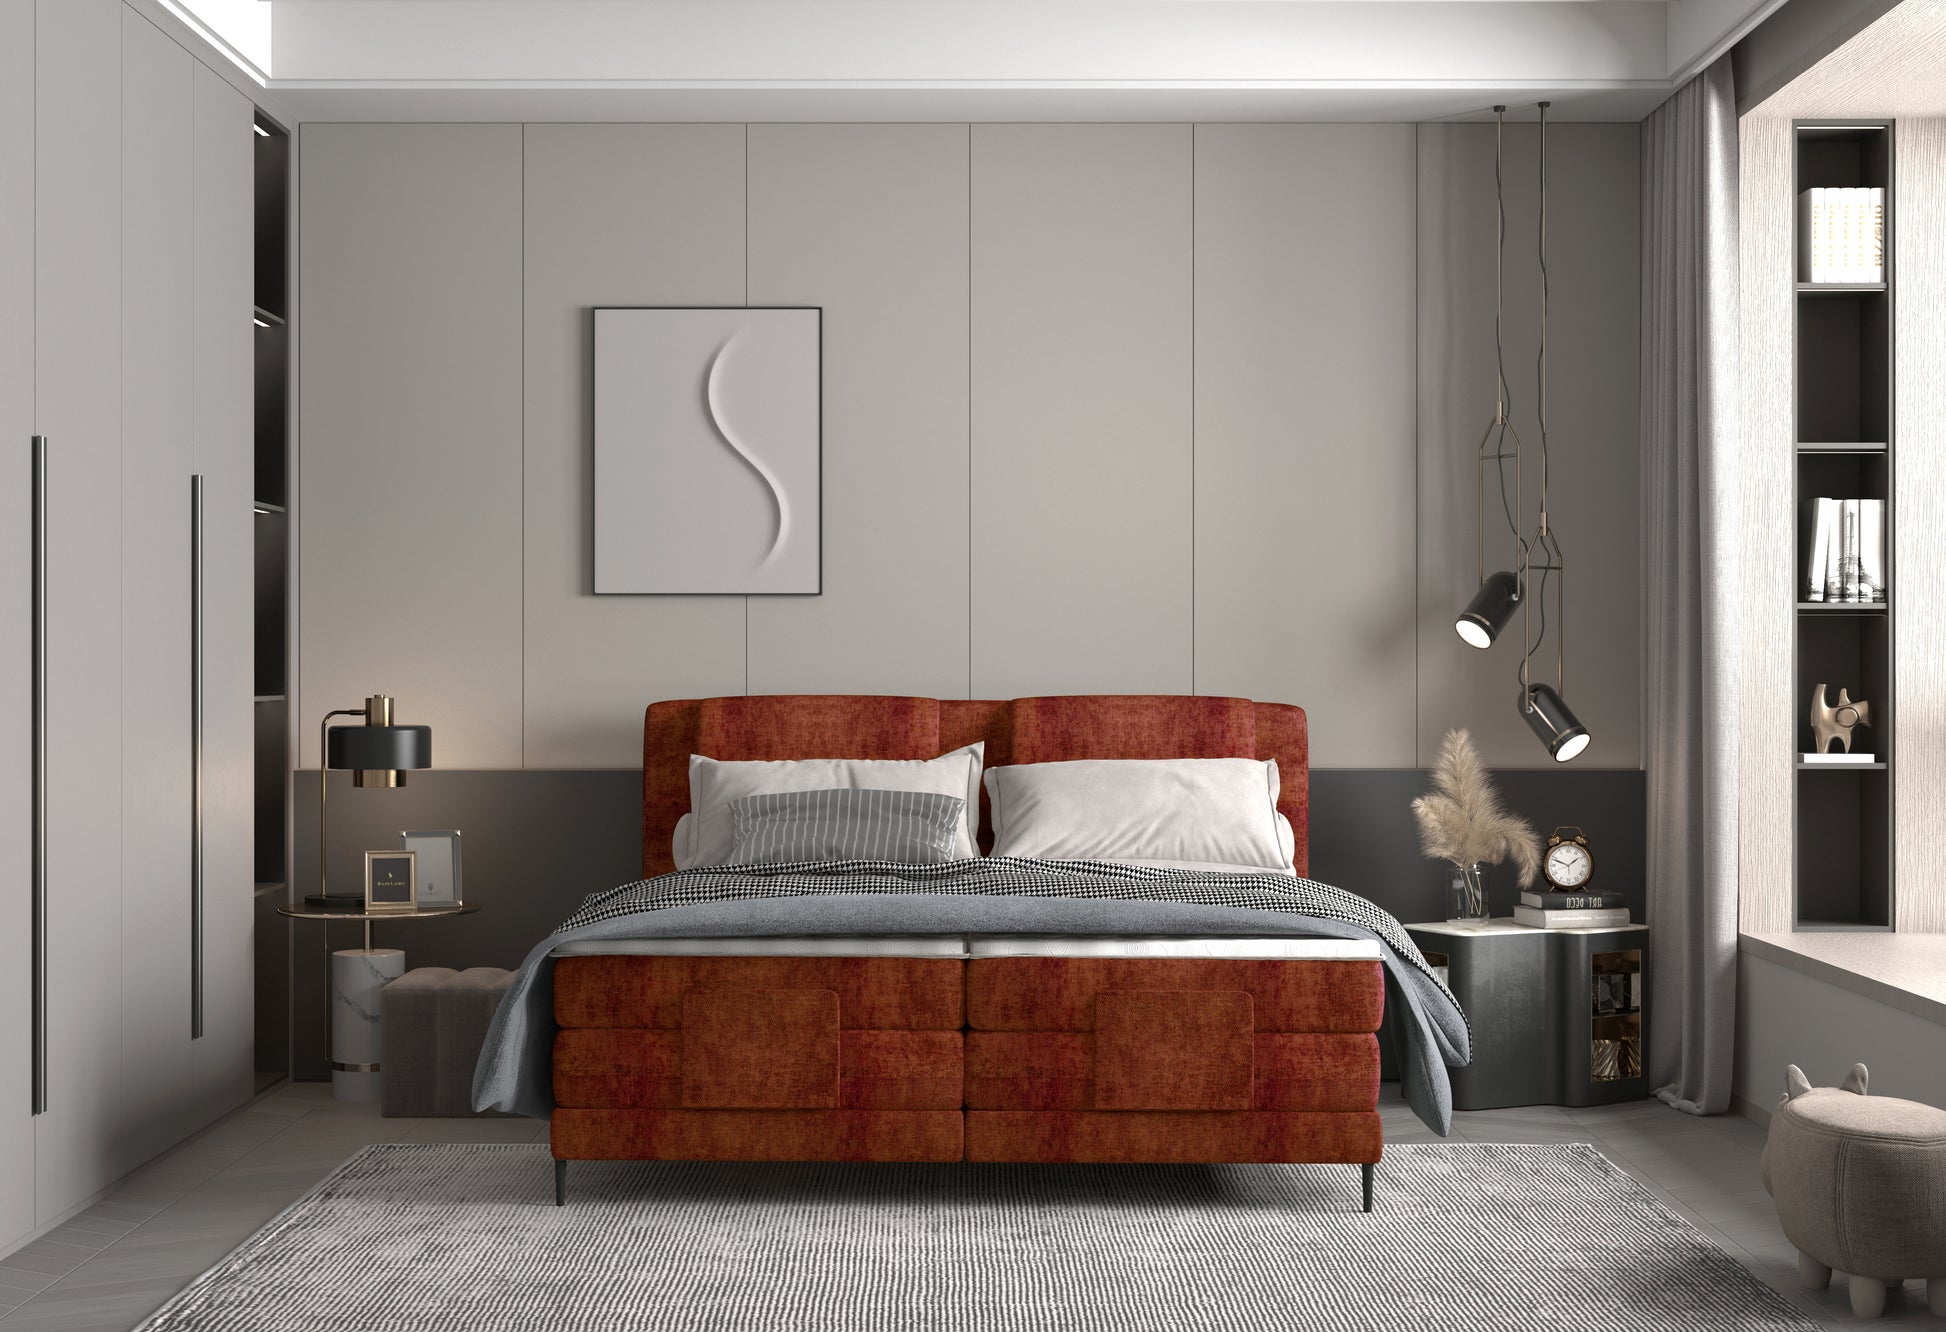 Zdjęcie przedstawiające przykładową aranżację nowoczesnej sypialni z łóżkiem kontynentalnym Wave dostępnym w trzech rozmiarach 140x200 160x200 180x200